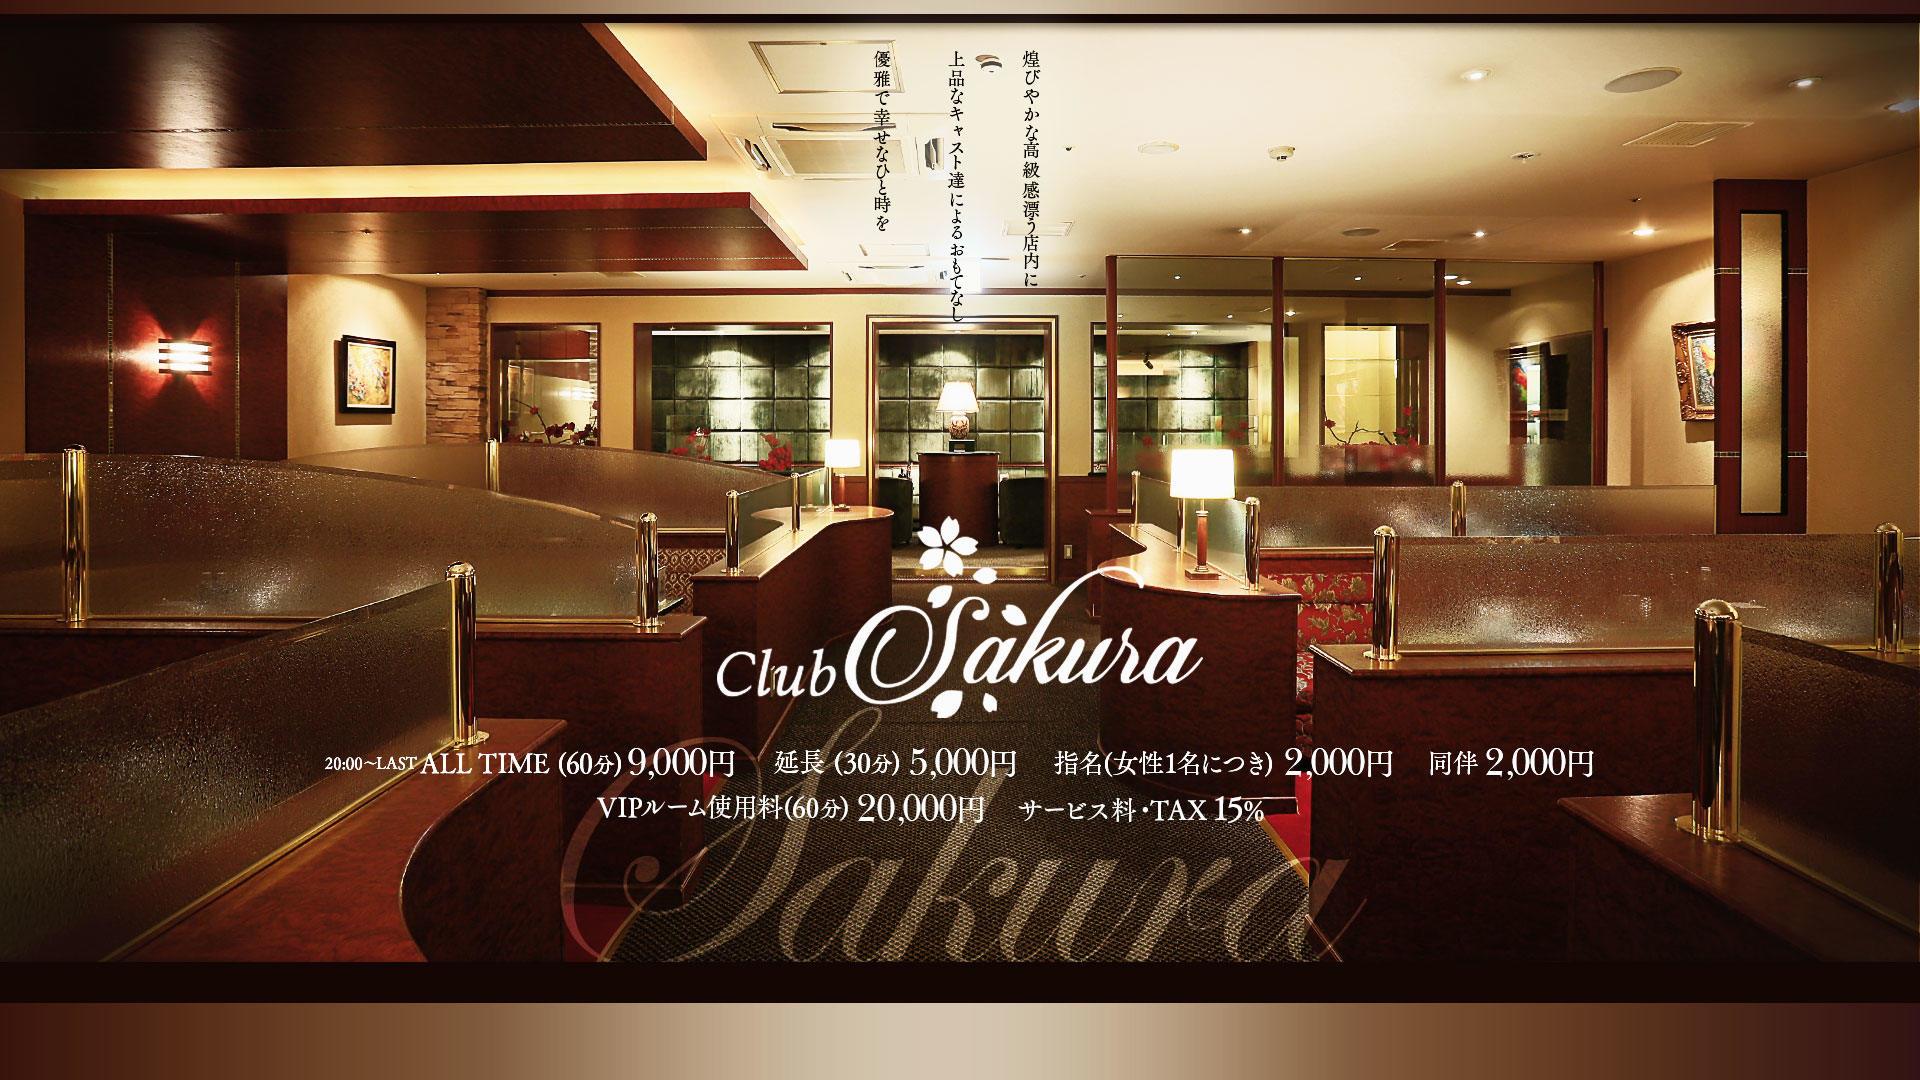 Club Sakura